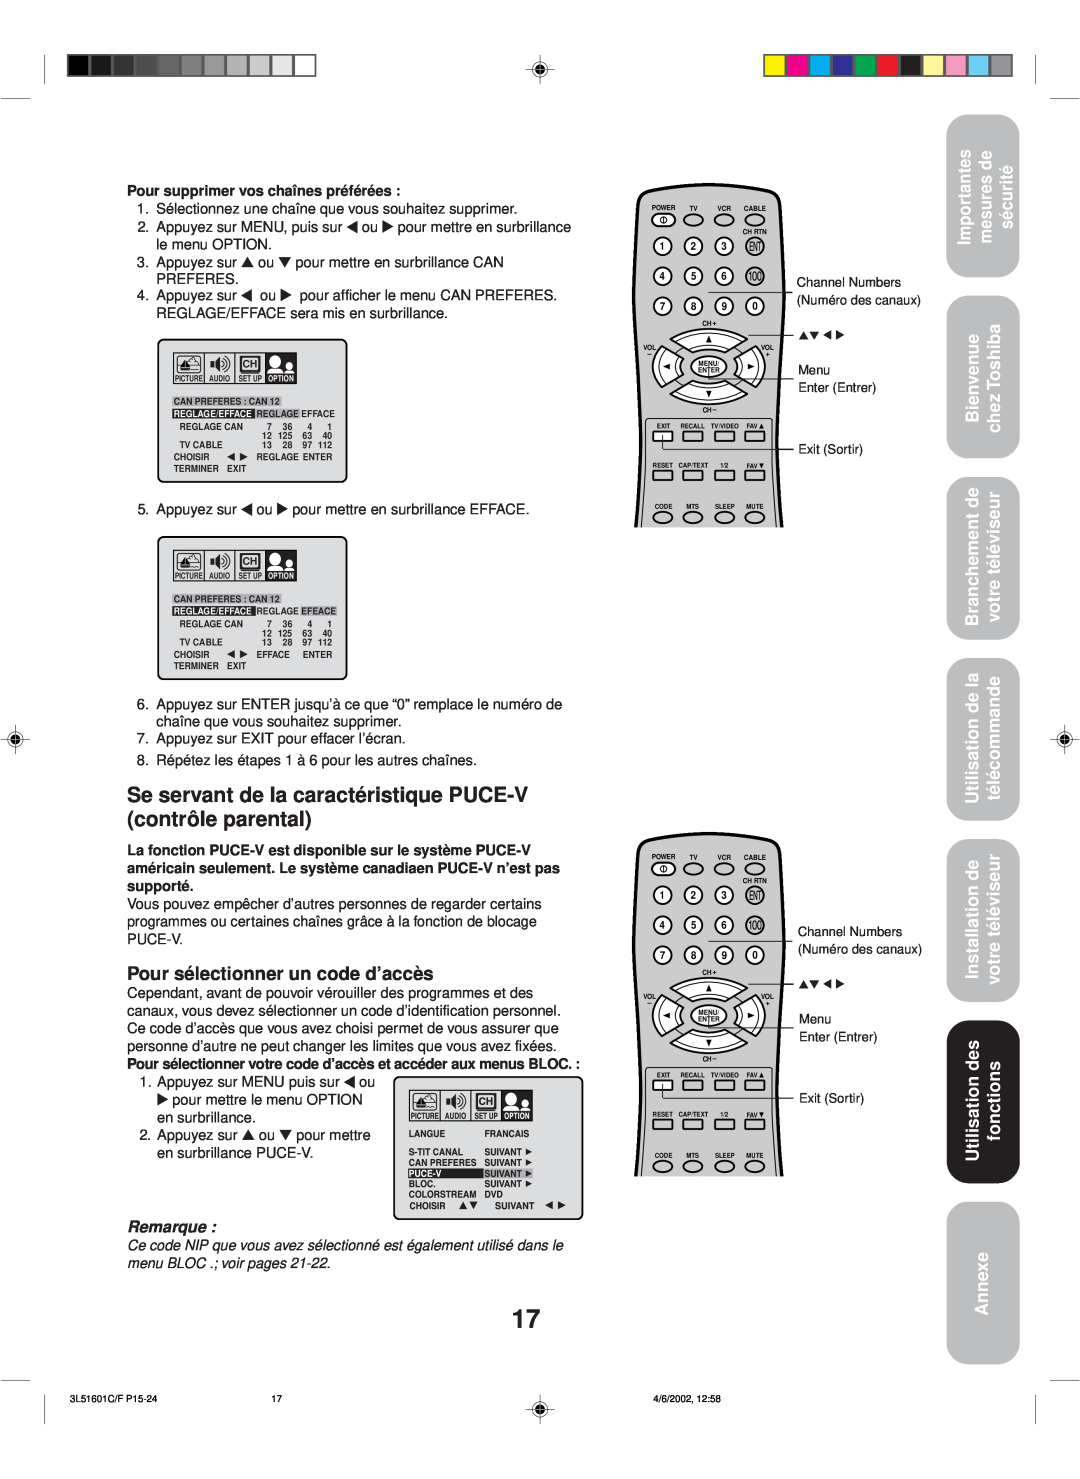 Toshiba TV 27A42 appendix Se servant de la caractéristique PUCE-V contrôle parental, Pour sélectionner un code d’accès 